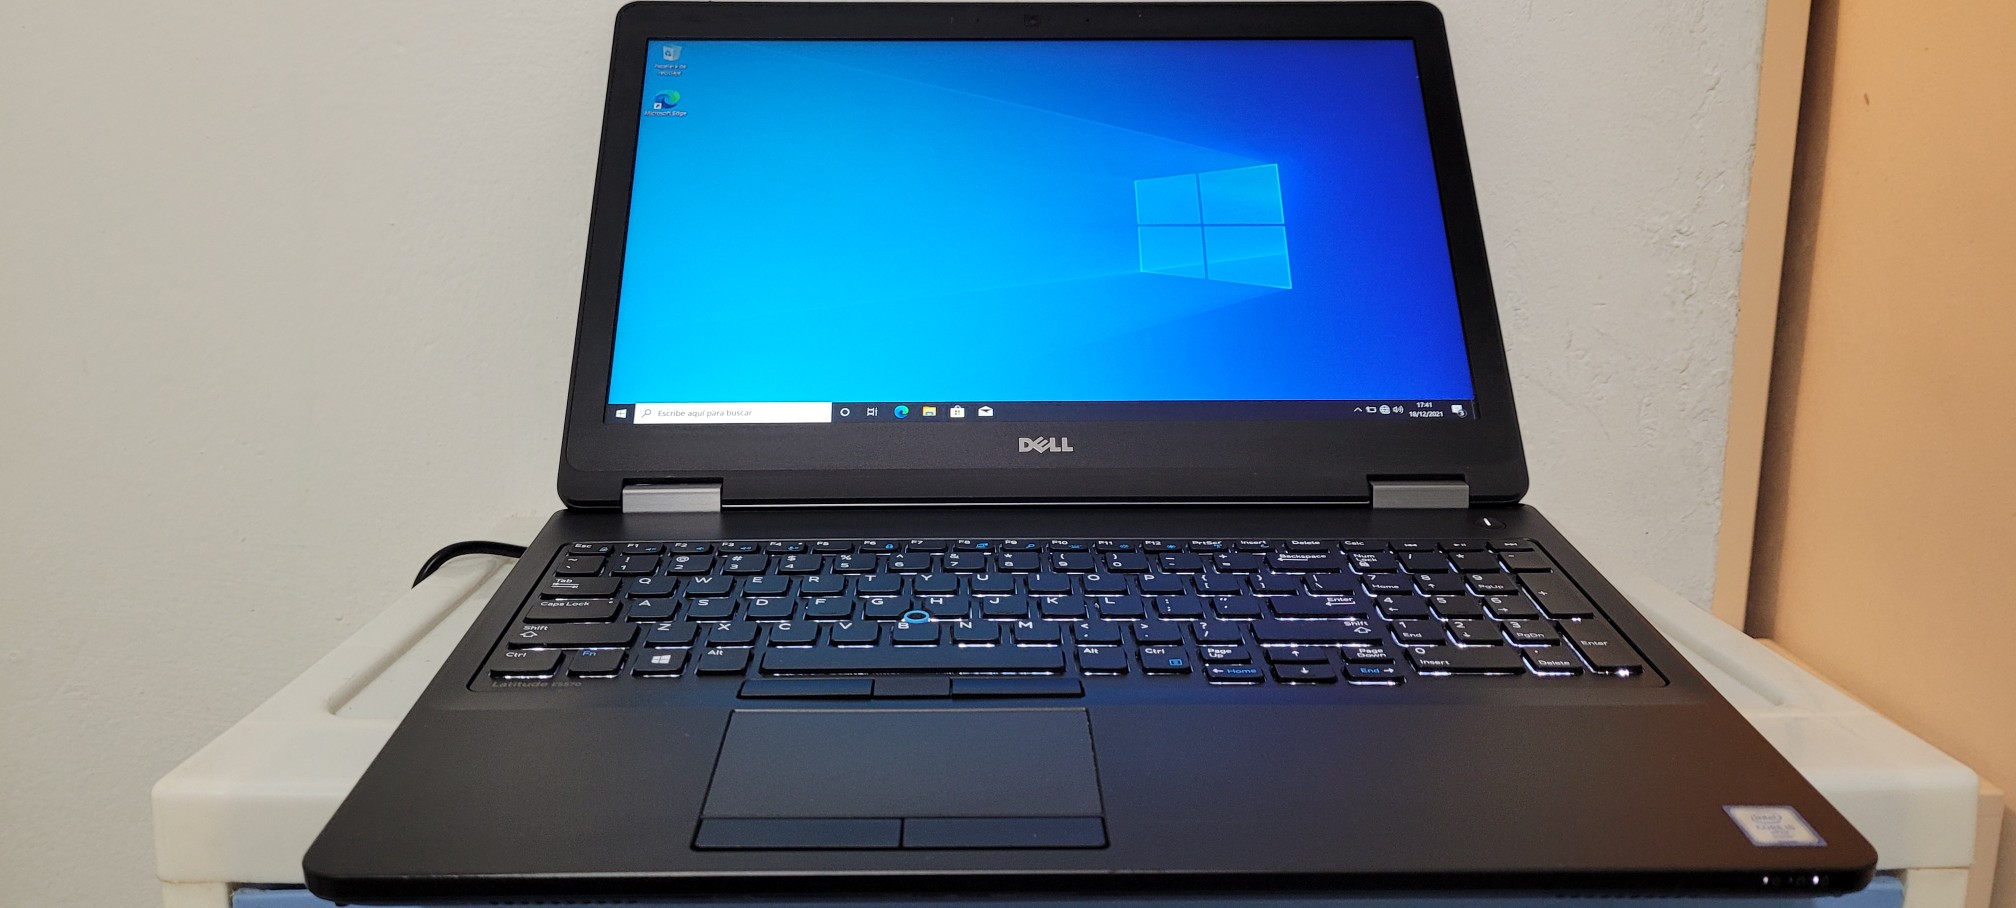 computadoras y laptops - Dell 5570 17 Pulg Core i5 6ta Gen Ram 8gb ddr4 Disco 128gb Y 500gb full